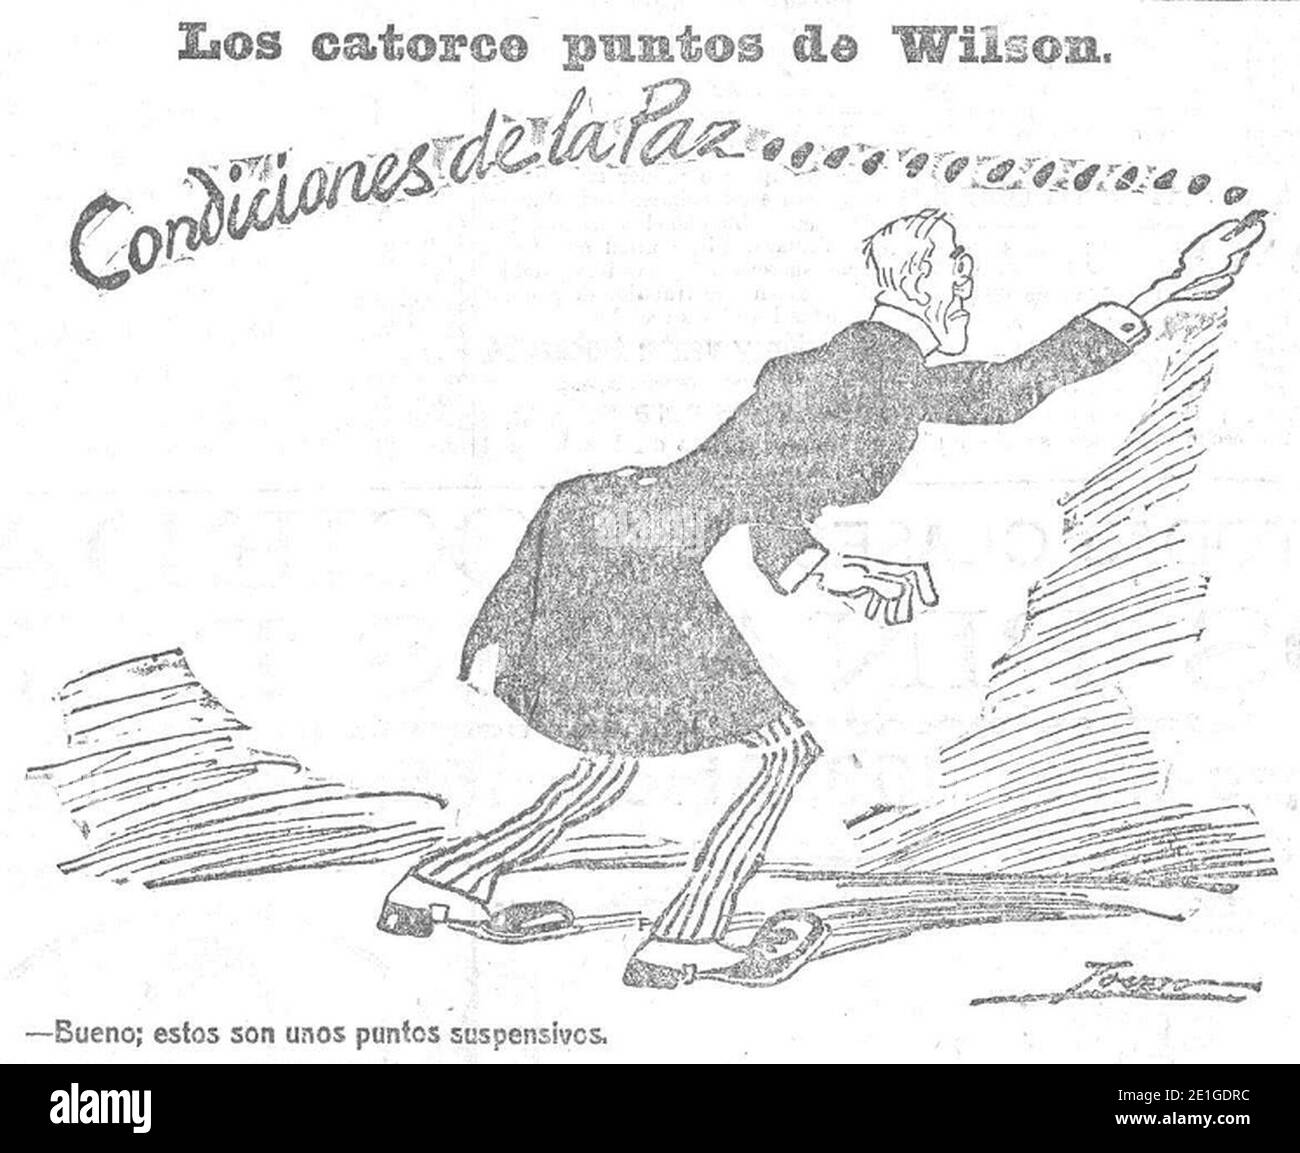 Los catorce puntos de Wilson, de Tovar, Heraldo de Madrid, 30 de diciembre de 1918. Stock Photo